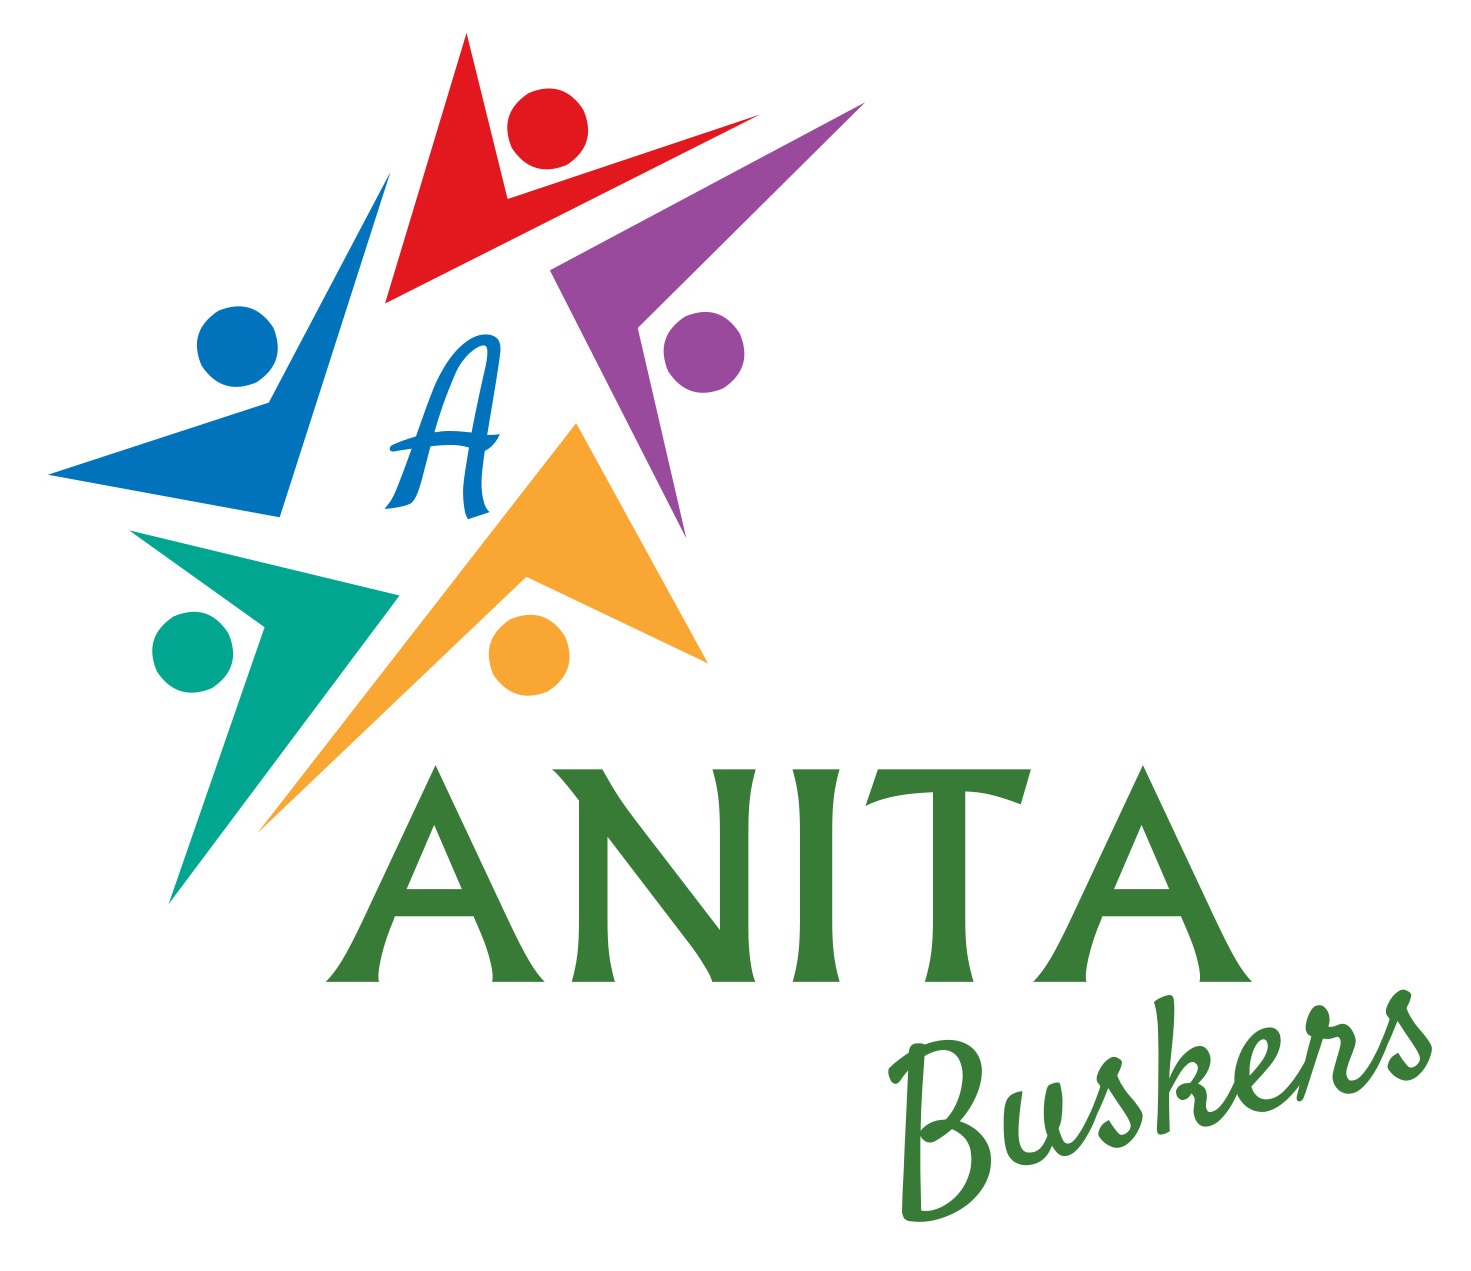 Anita Buskers Ets - Associazione Nazionale Intrattenimento e Tematiche Artistiche